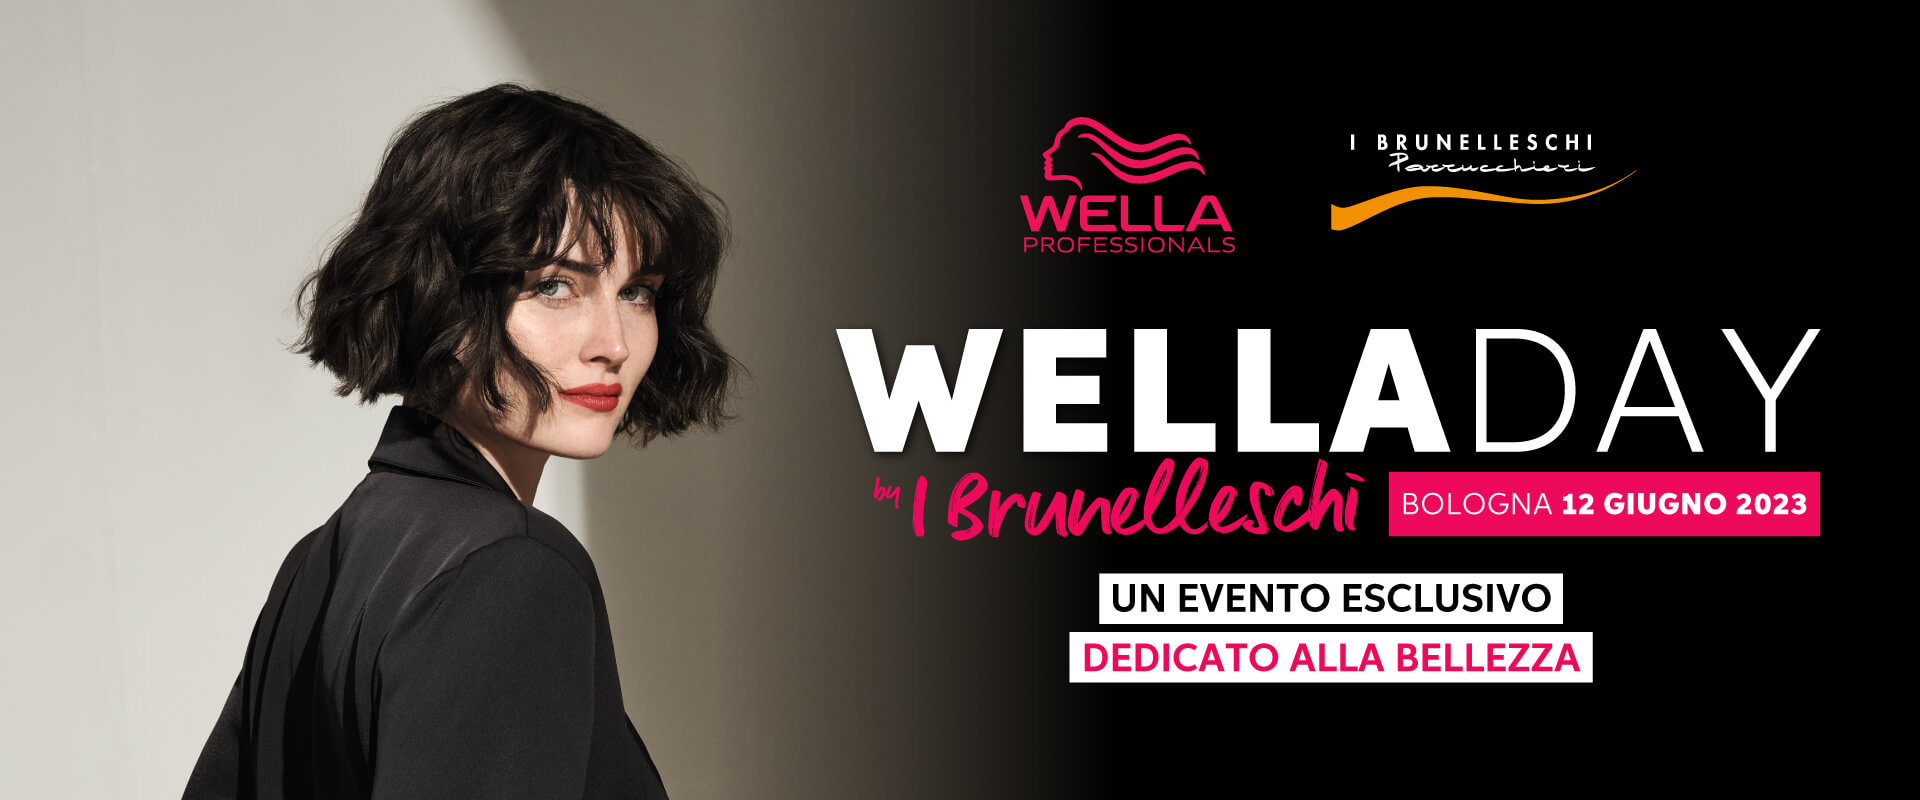 welladay e i brunelleschi evento